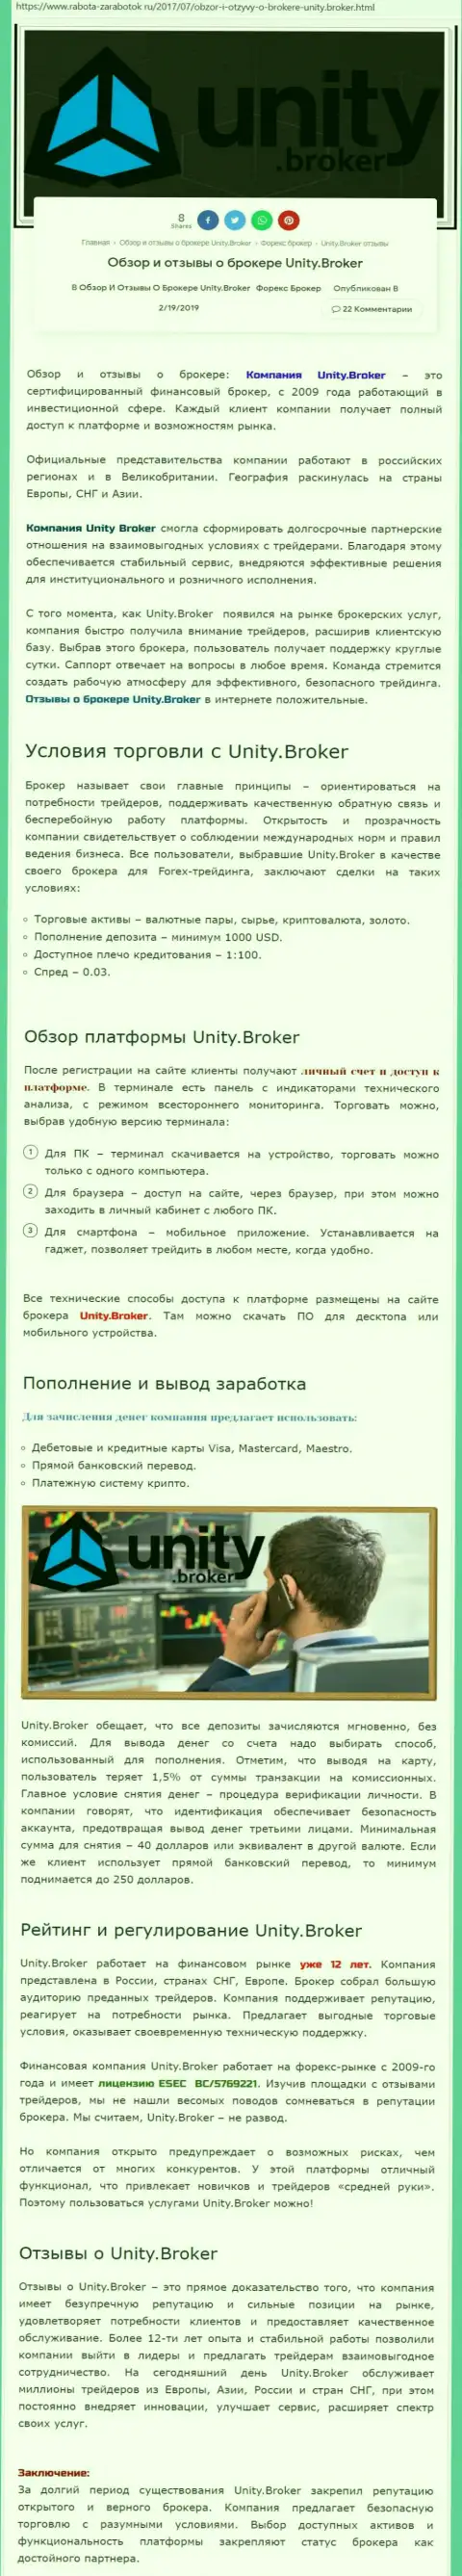 Обзорная информация форекс дилингового центра Unity Broker на портале rabota-zarabotok ru